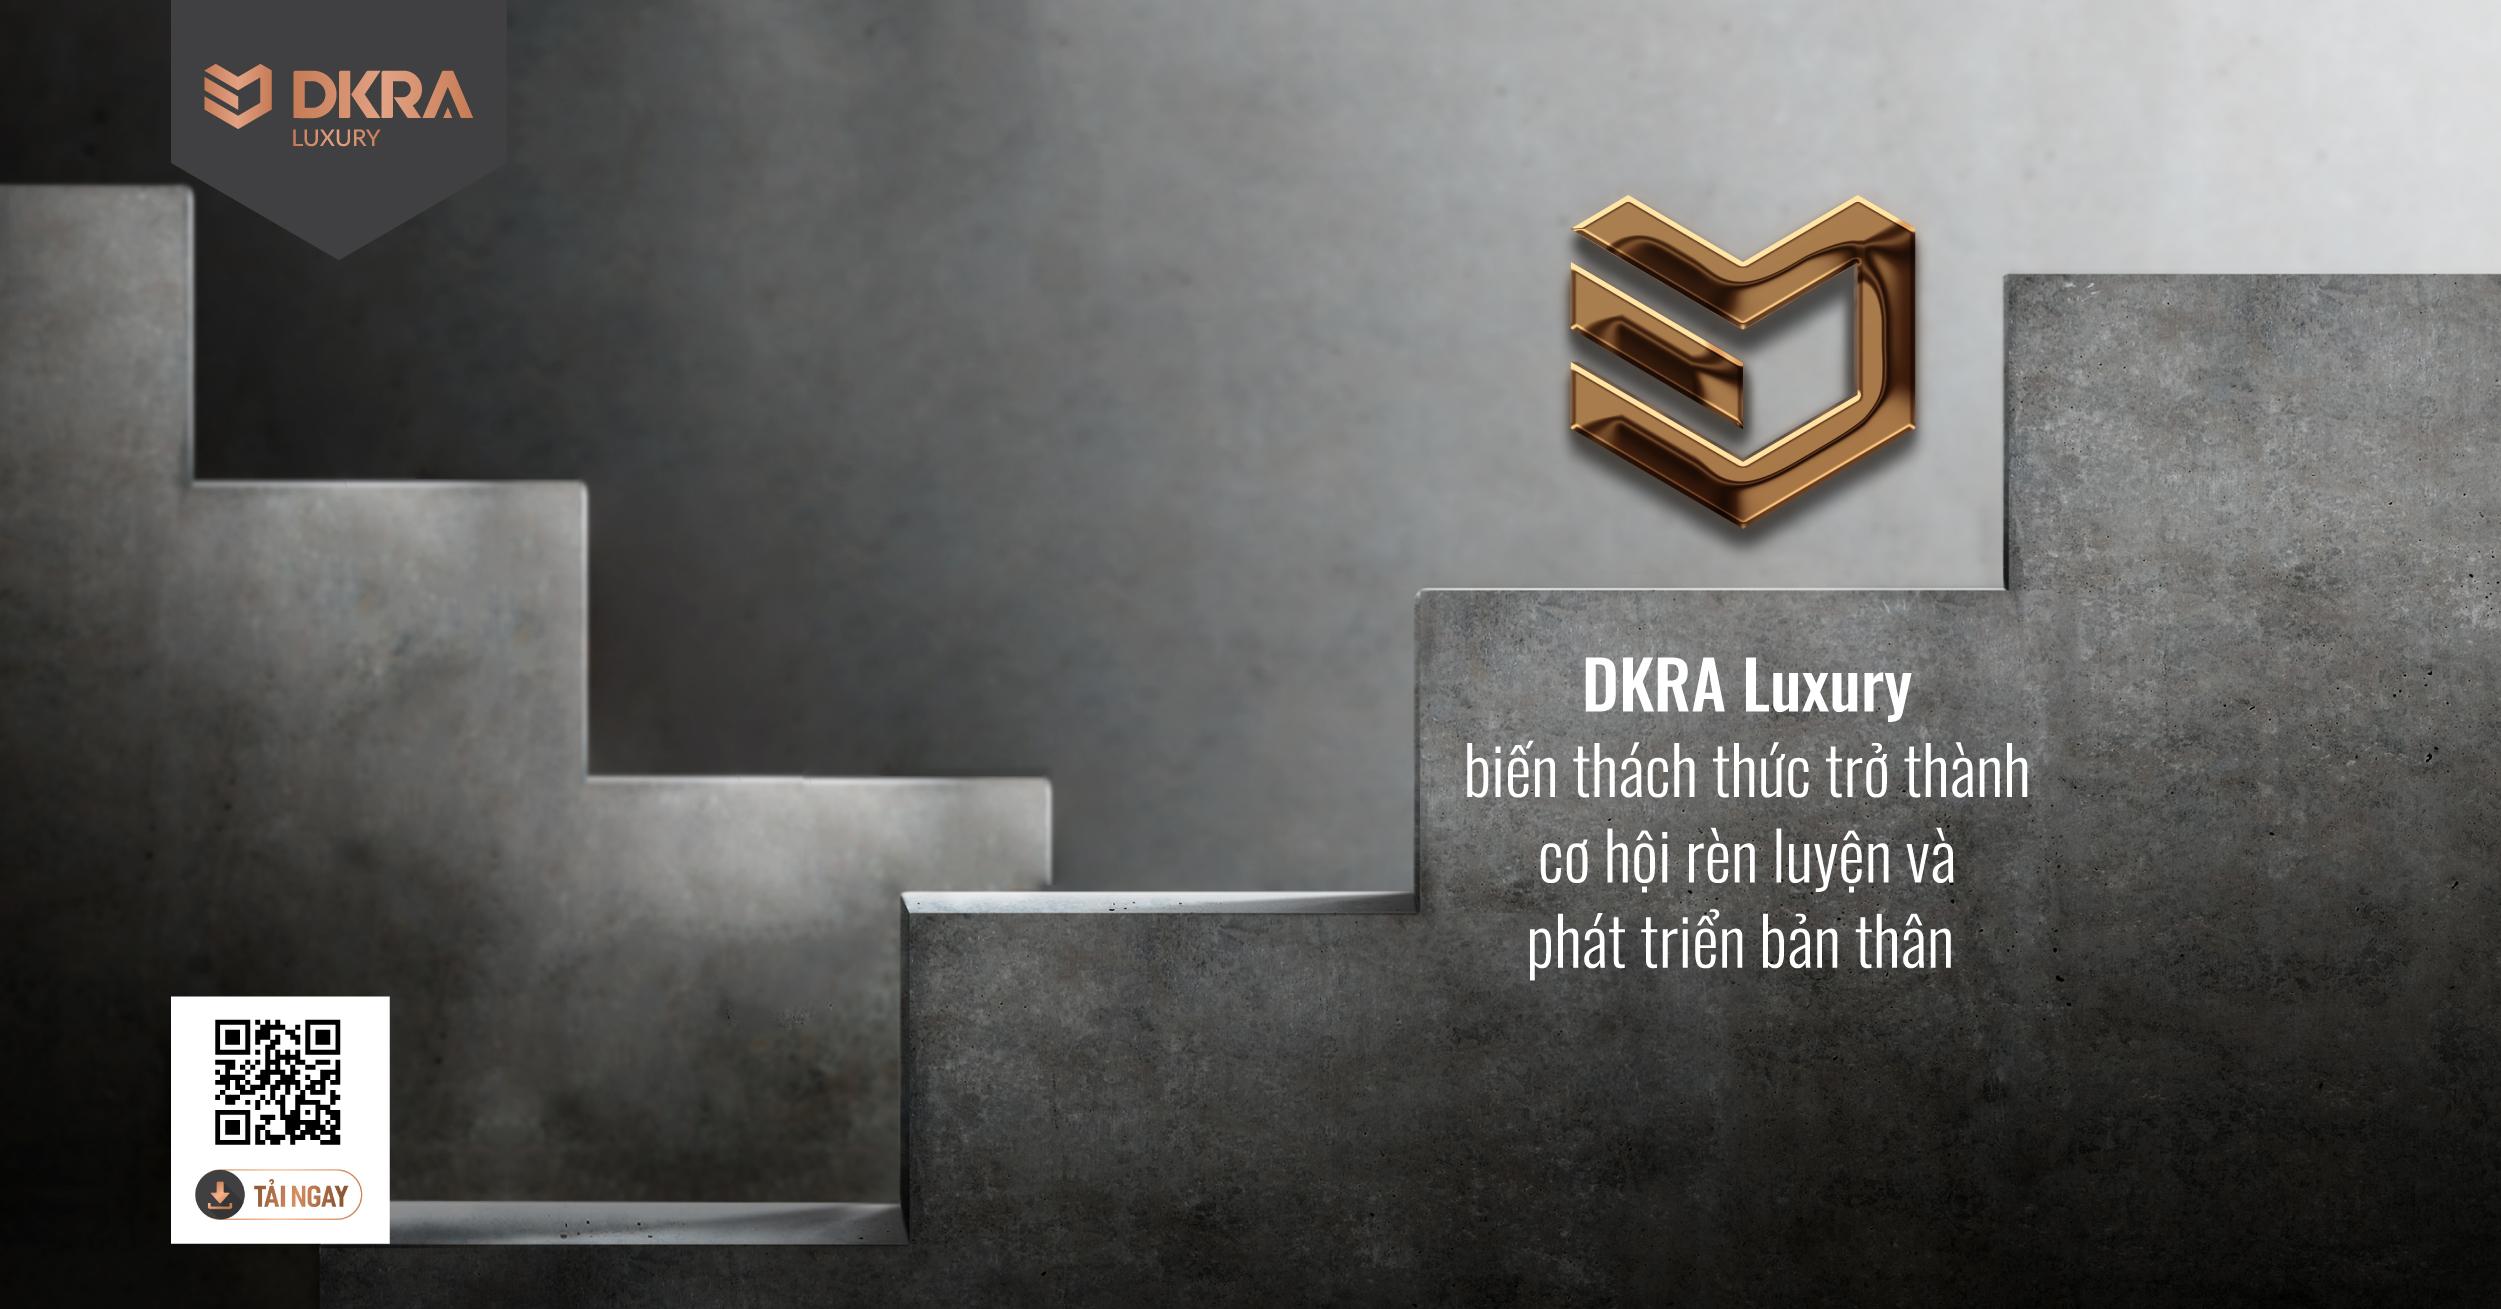 DKRA Luxury biến thách thức trở thành cơ hội rèn luyện và phát triển bản thân